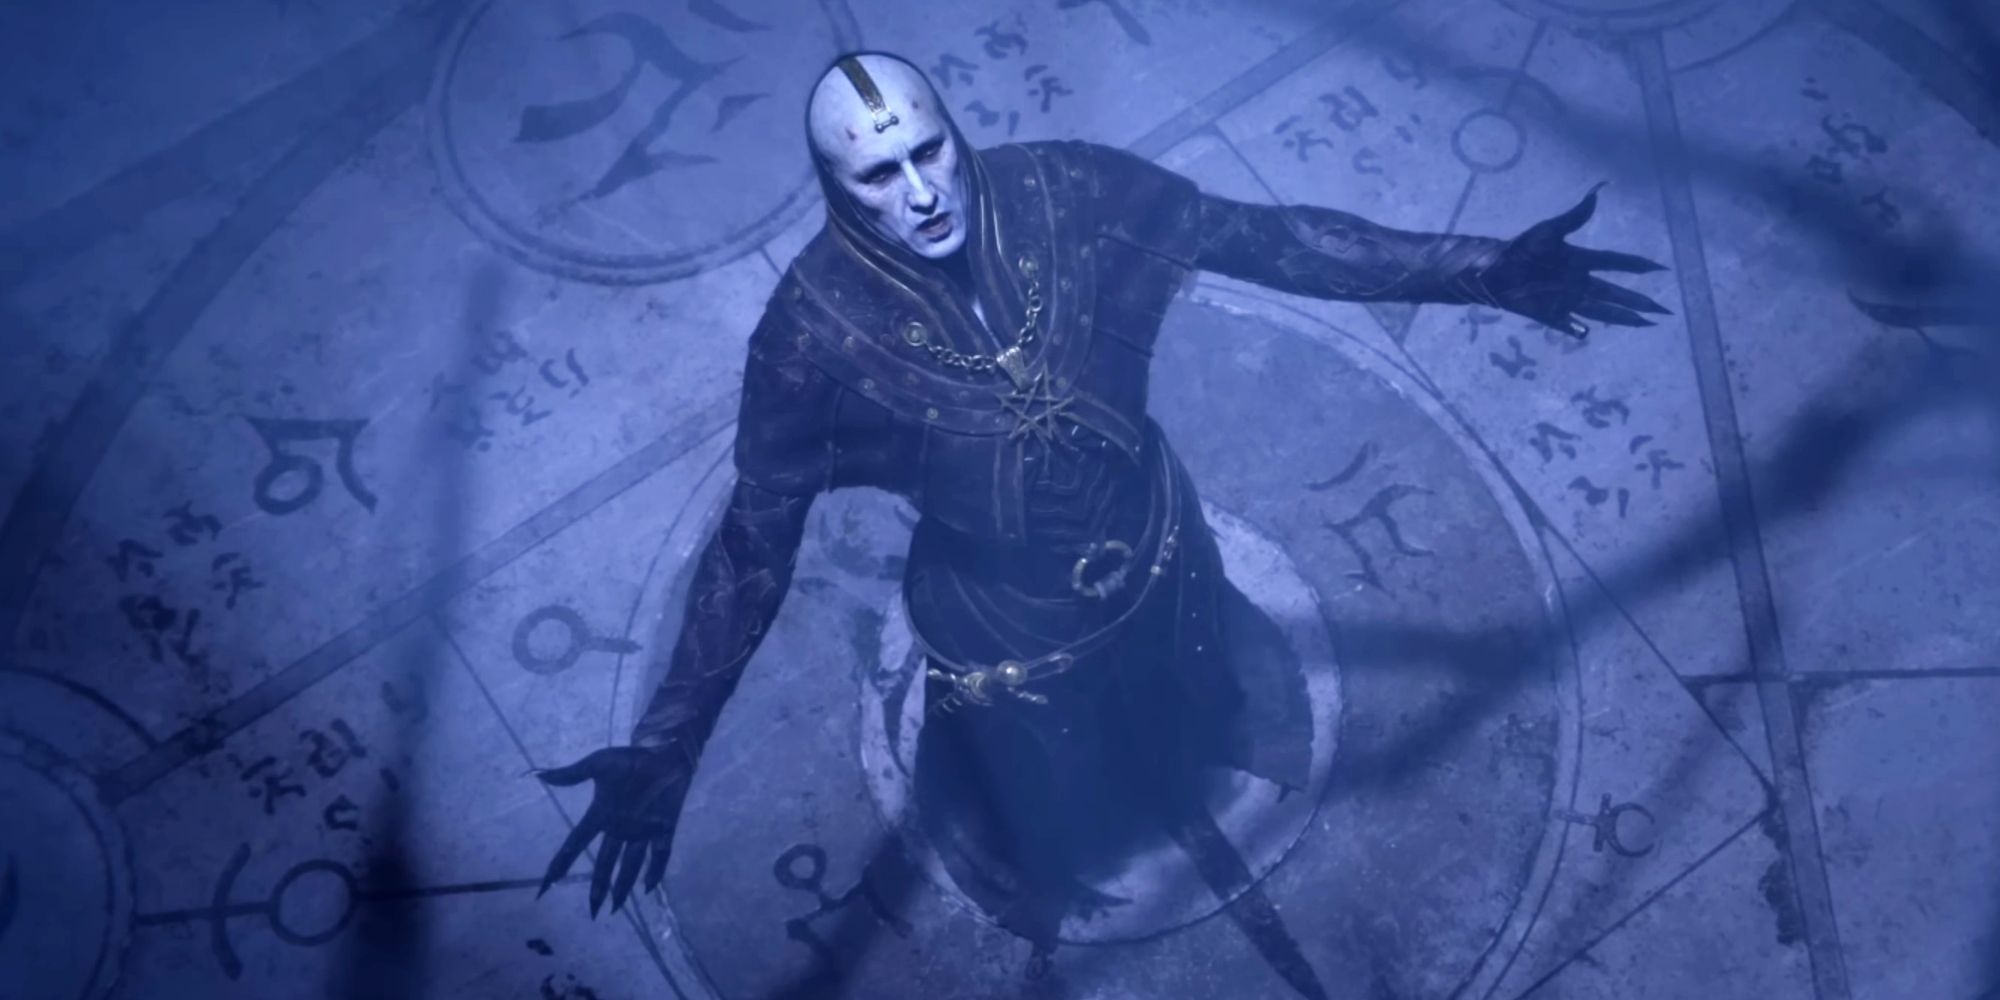 Tangkapan layar dari cutscene sinematik pembukaan Diablo 4, memperlihatkan seorang pria berdiri di lantai yang dipenuhi simbol setan dengan tangan terentang, melihat ke atas.